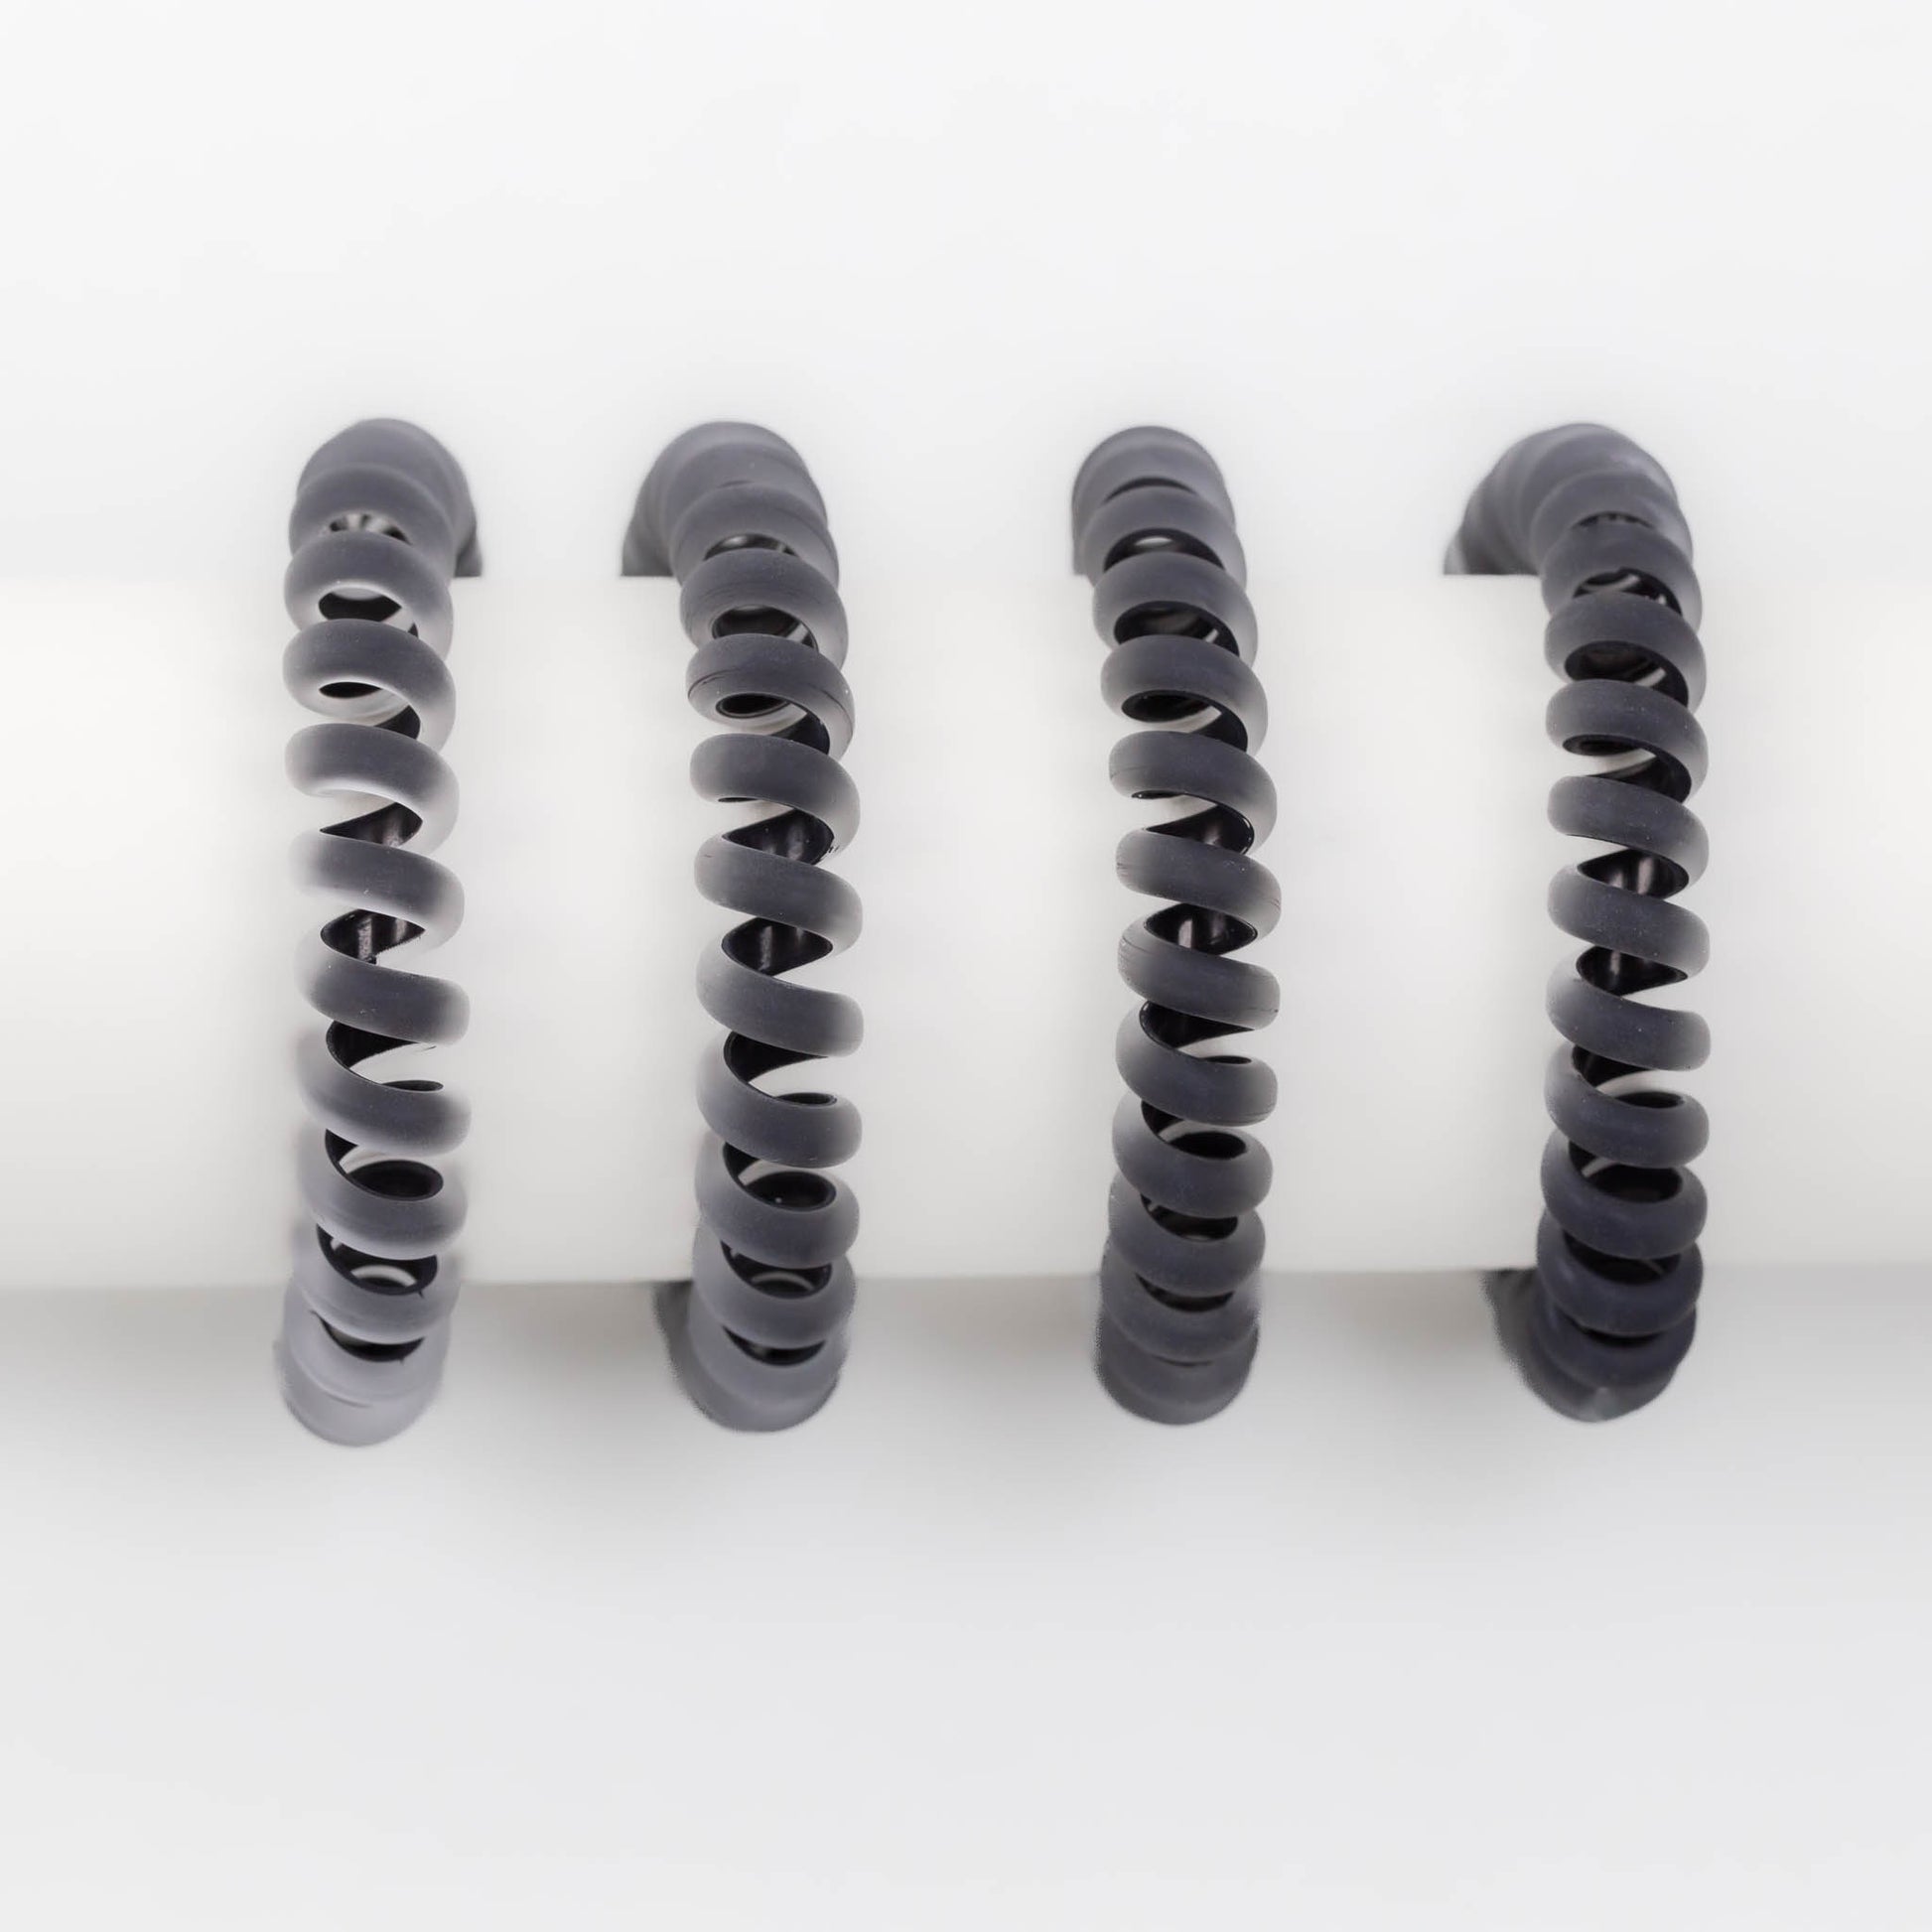 Elastice de păr din silicon cu textură mată, grosime 1 cm, set 4 buc - Negru